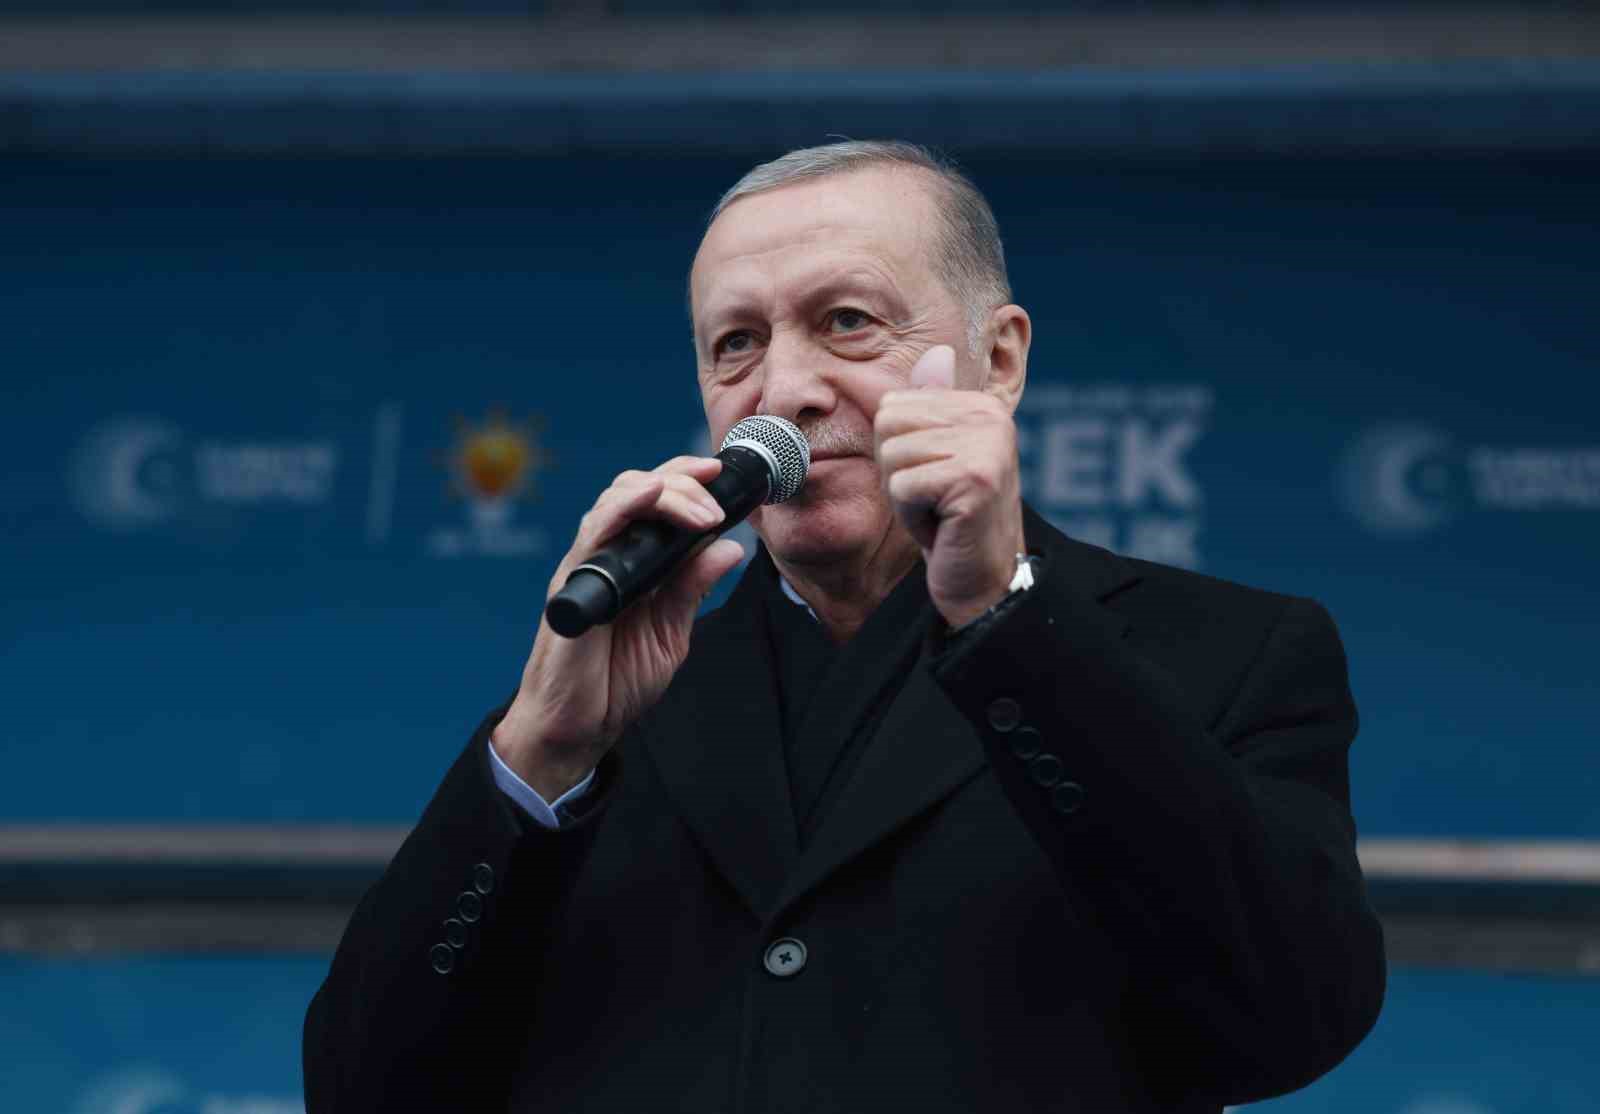 Cumhurbaşkanı Recep Tayyip Erdoğan: “Ekonomide güçlü bir kadro kurduk. Yılın ikinci yarısından itibaren uyguladığımız ekonomi programının olumlu yansımalarını daha net göreceğiz.”
